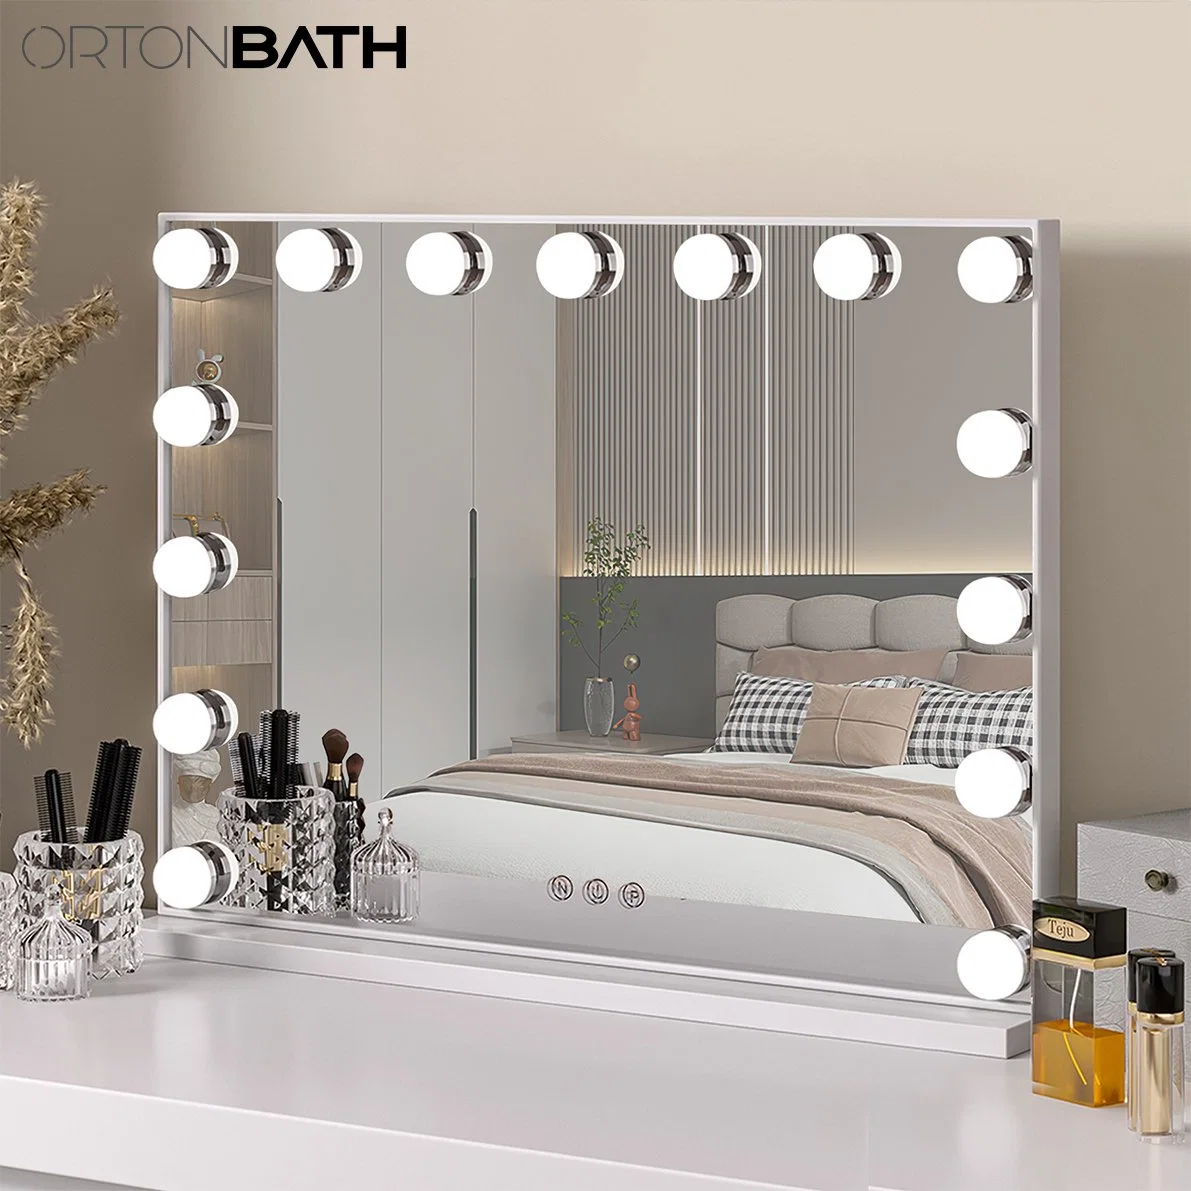 Miroir de coiffeuse Ortonbath Hollywood avec éclairage LED réglable 3 Modes 2 en 1 grand miroir à maquillage éclairé pour bureau et mur